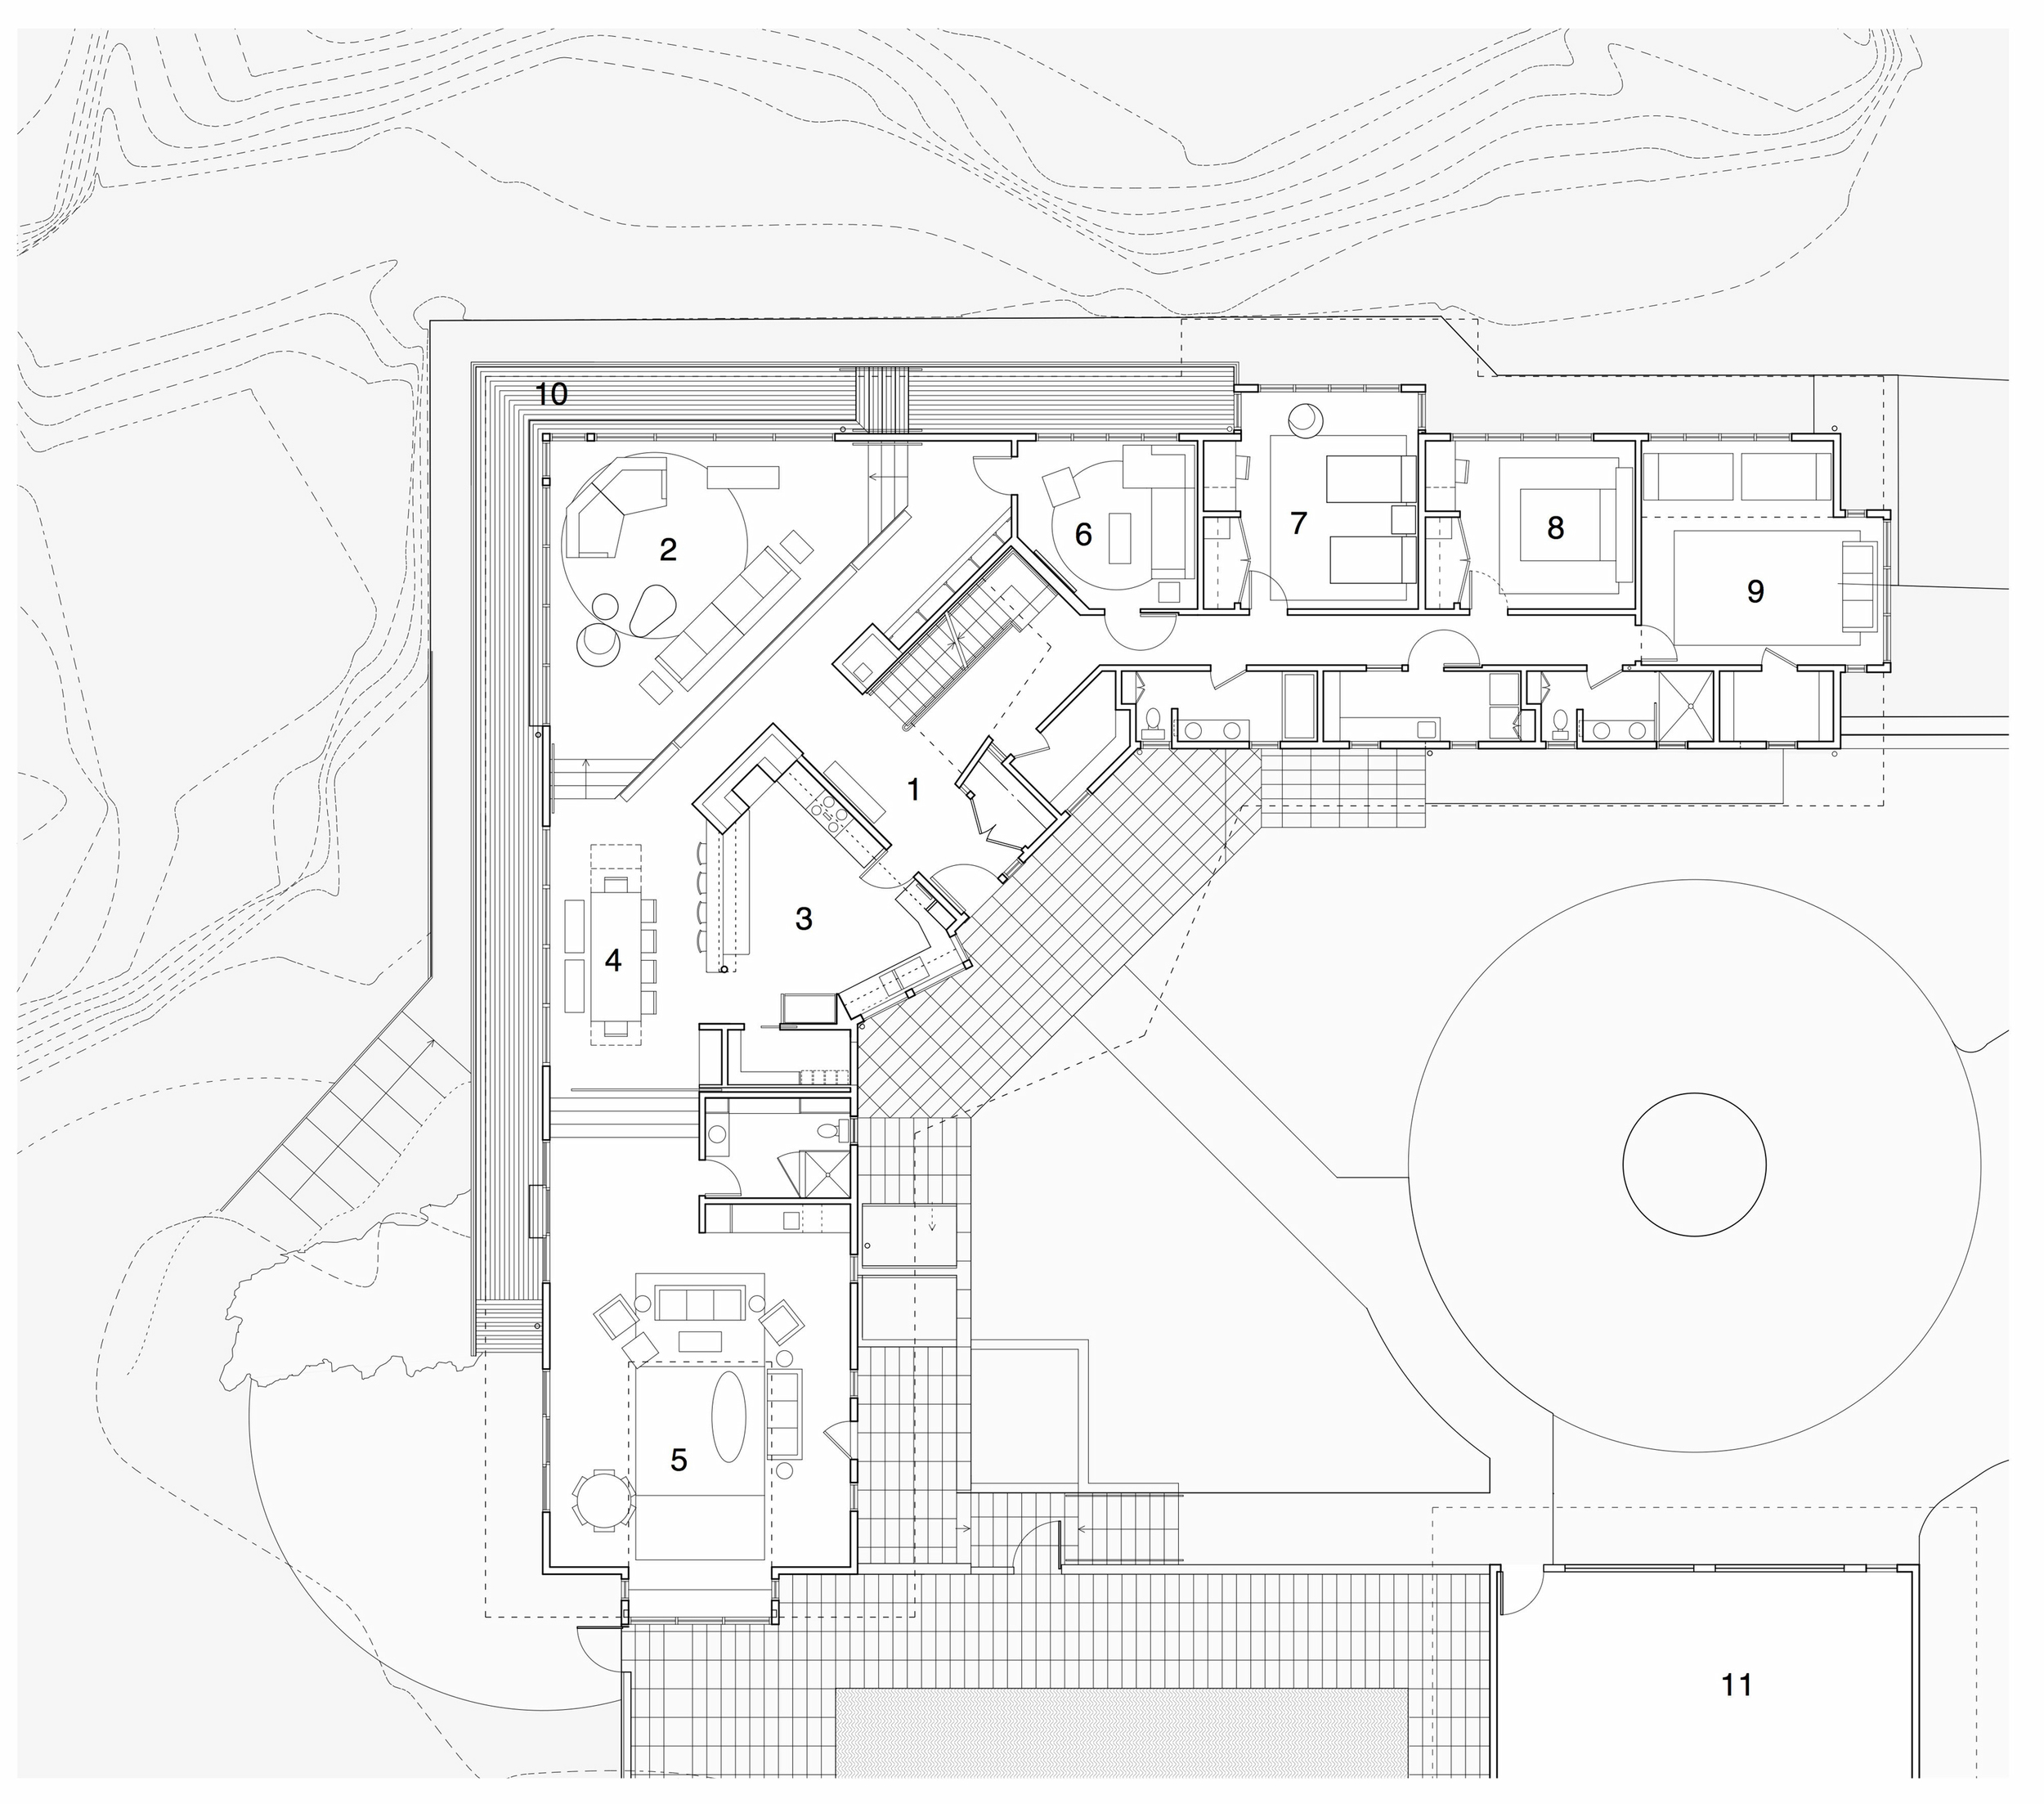  main floor plan:&nbsp; (1) entryway, (2) living room, (3) kitchen, (4) dining area, (5) family room, (6) den, (7-9) bedrooms, (10) deck, (11) garage 